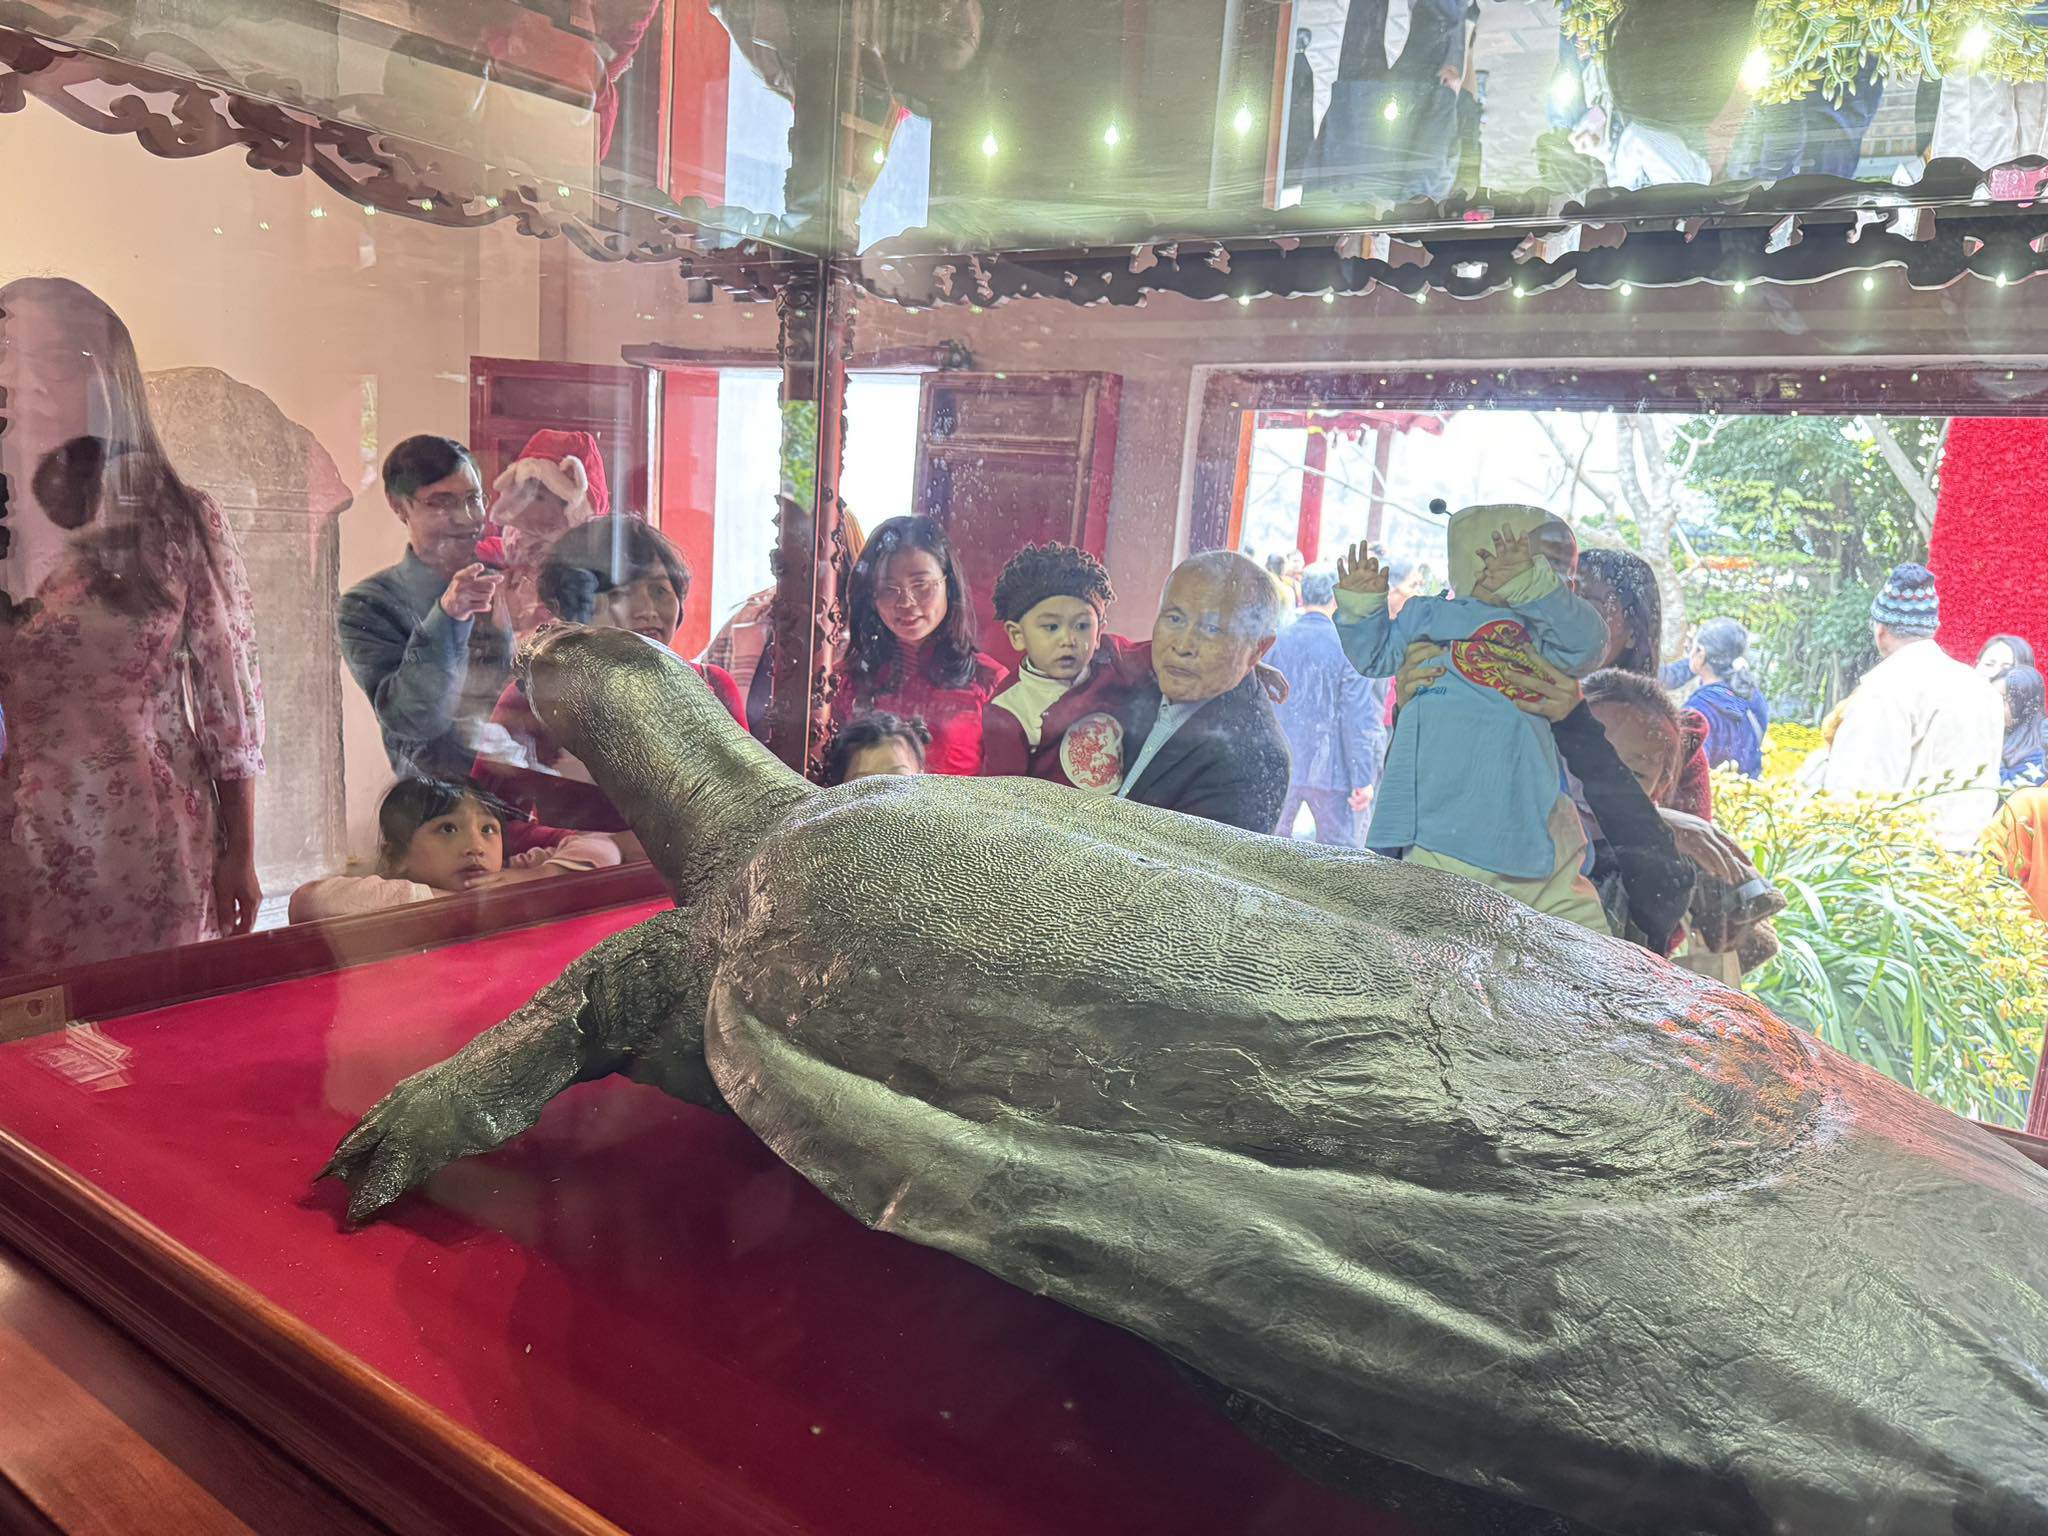 Tiêu bản thứ nhất được trưng bày ở tủ bên ngoài (gần cửa ra vào). “Cụ Rùa’ chết năm 1967, nặng 250kg, mai dài 2,1m, rộng 1,2m, được bảo quản bằng phương pháp nhồi xác và ngâm tẩm hóa chất.